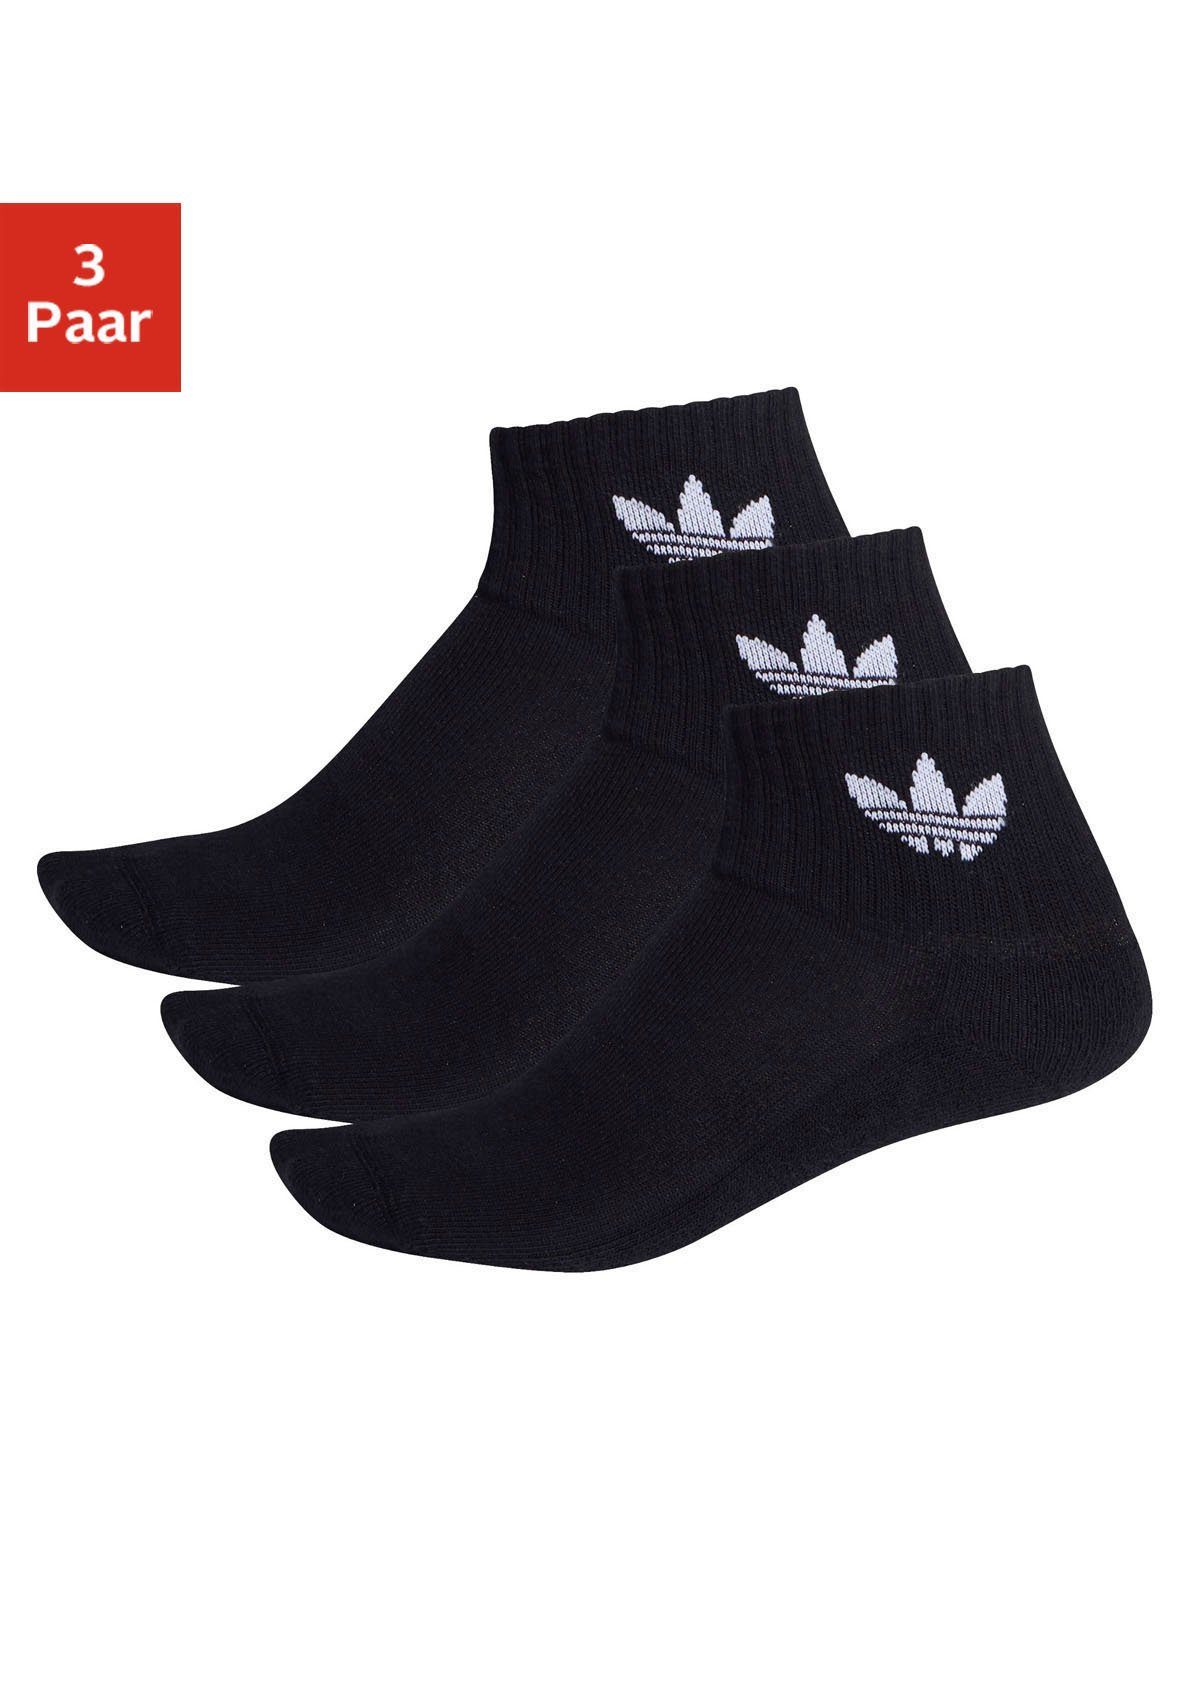 adidas Originals Sportsocken MIDCUT CREW SOCKEN, 3 PAAR, Drei Paar bequeme,  wadenlange Socken.